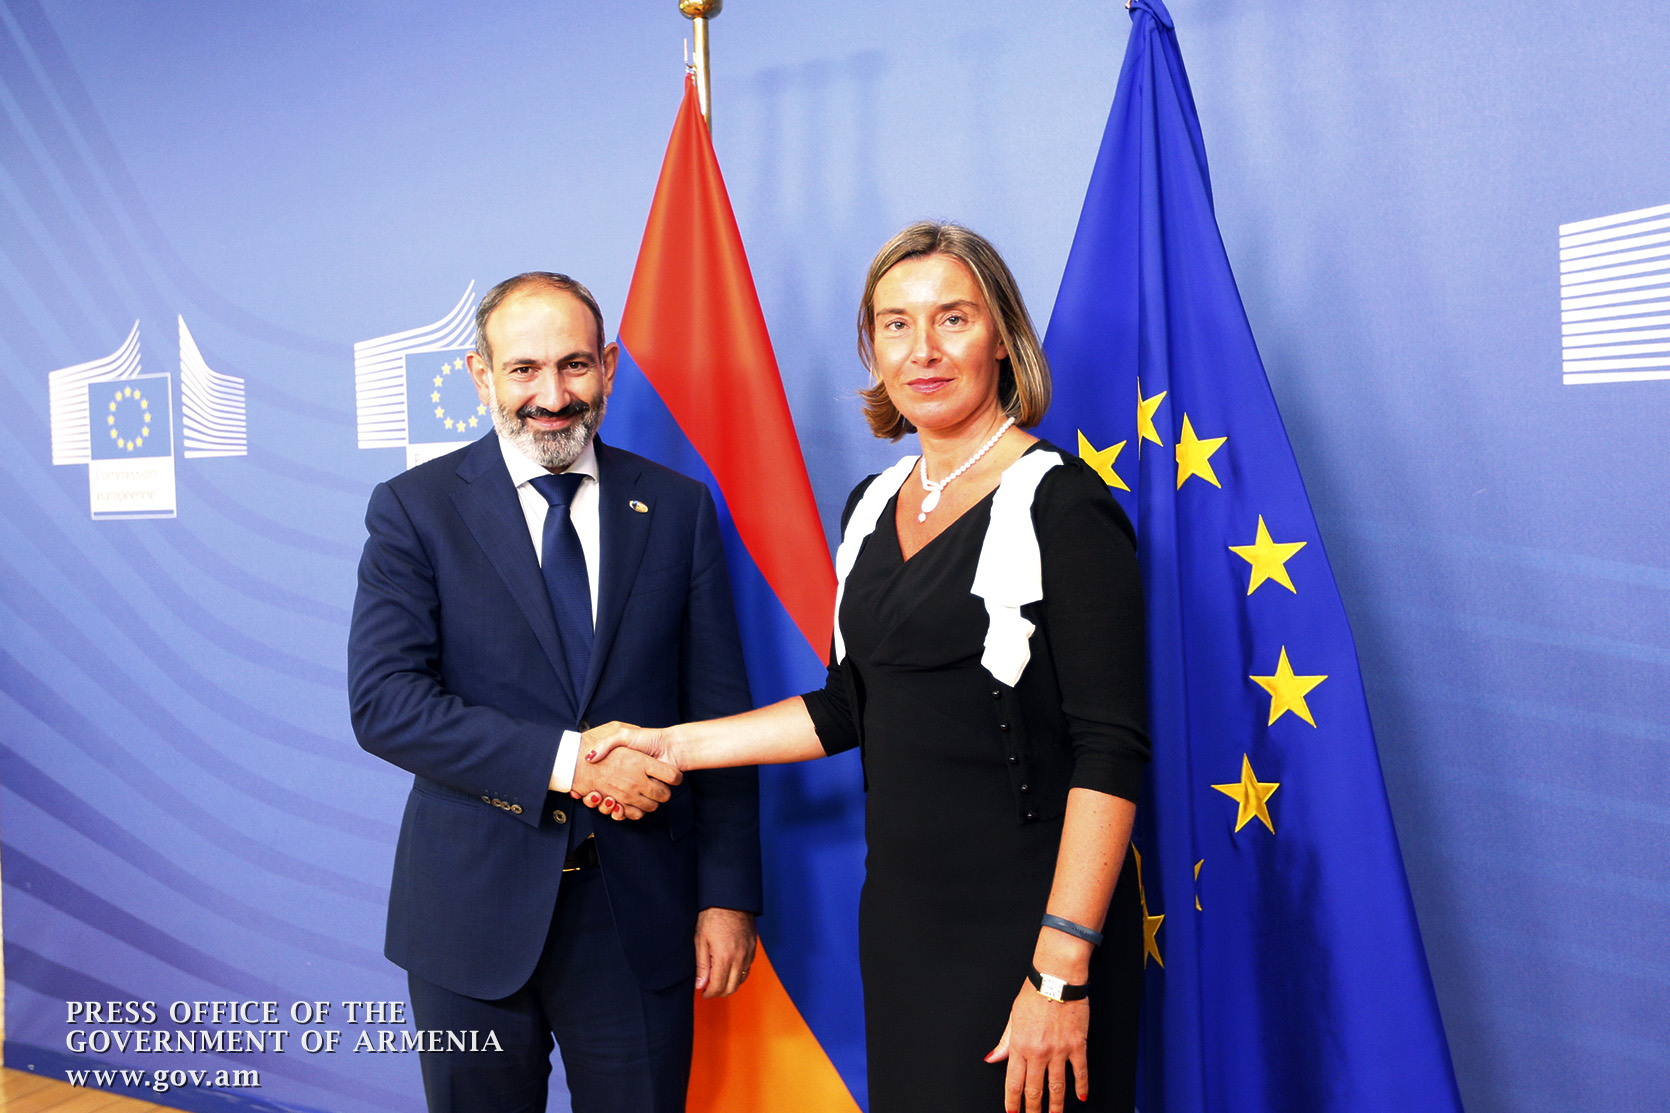 ԵՄ-ն պատրաստ է օժանդակել Հայաստանում տեղի ունեցող բարեփոխումներին. Մոգերինի